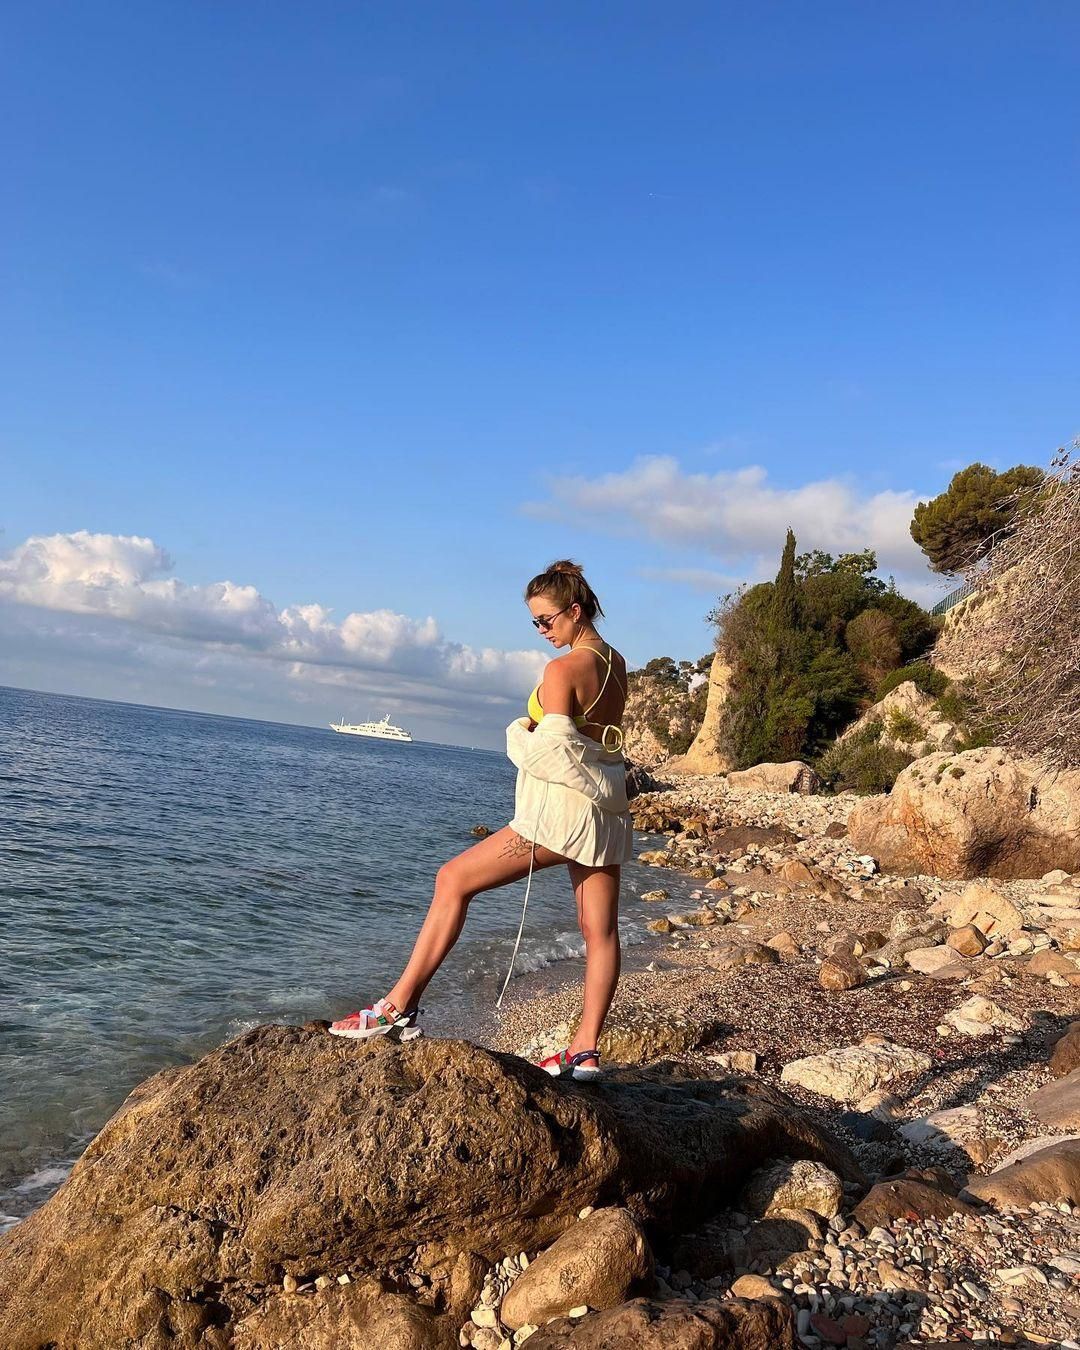 Життя без тенісу: вагітна Світоліна у купальнику позувала на пляжі Монако